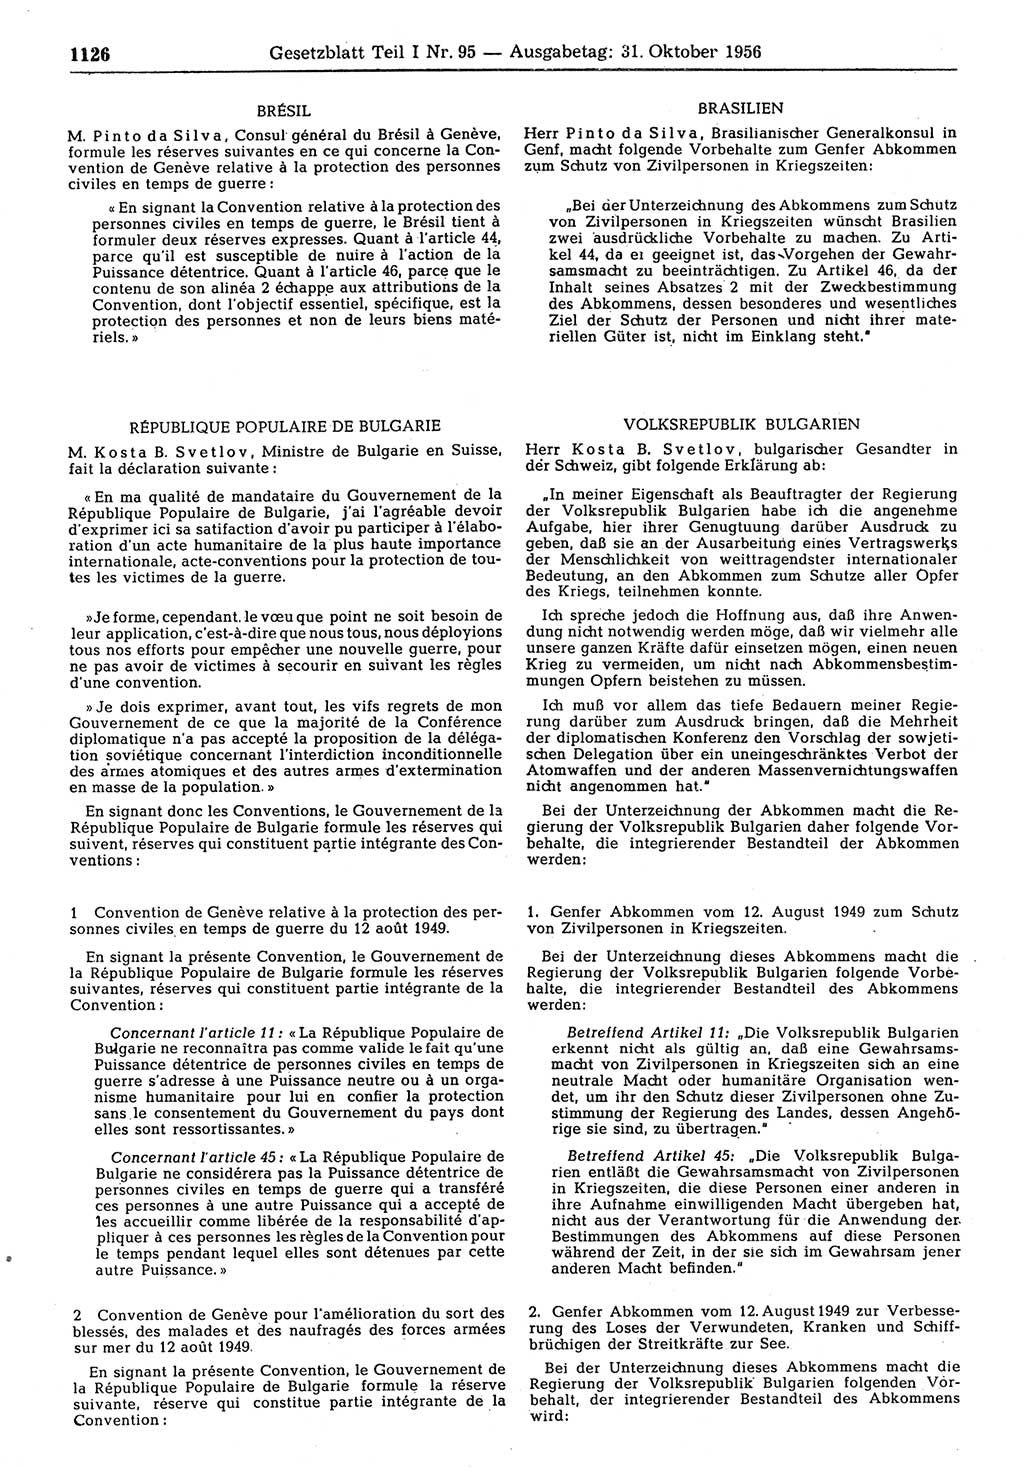 Gesetzblatt (GBl.) der Deutschen Demokratischen Republik (DDR) Teil Ⅰ 1956, Seite 1126 (GBl. DDR Ⅰ 1956, S. 1126)